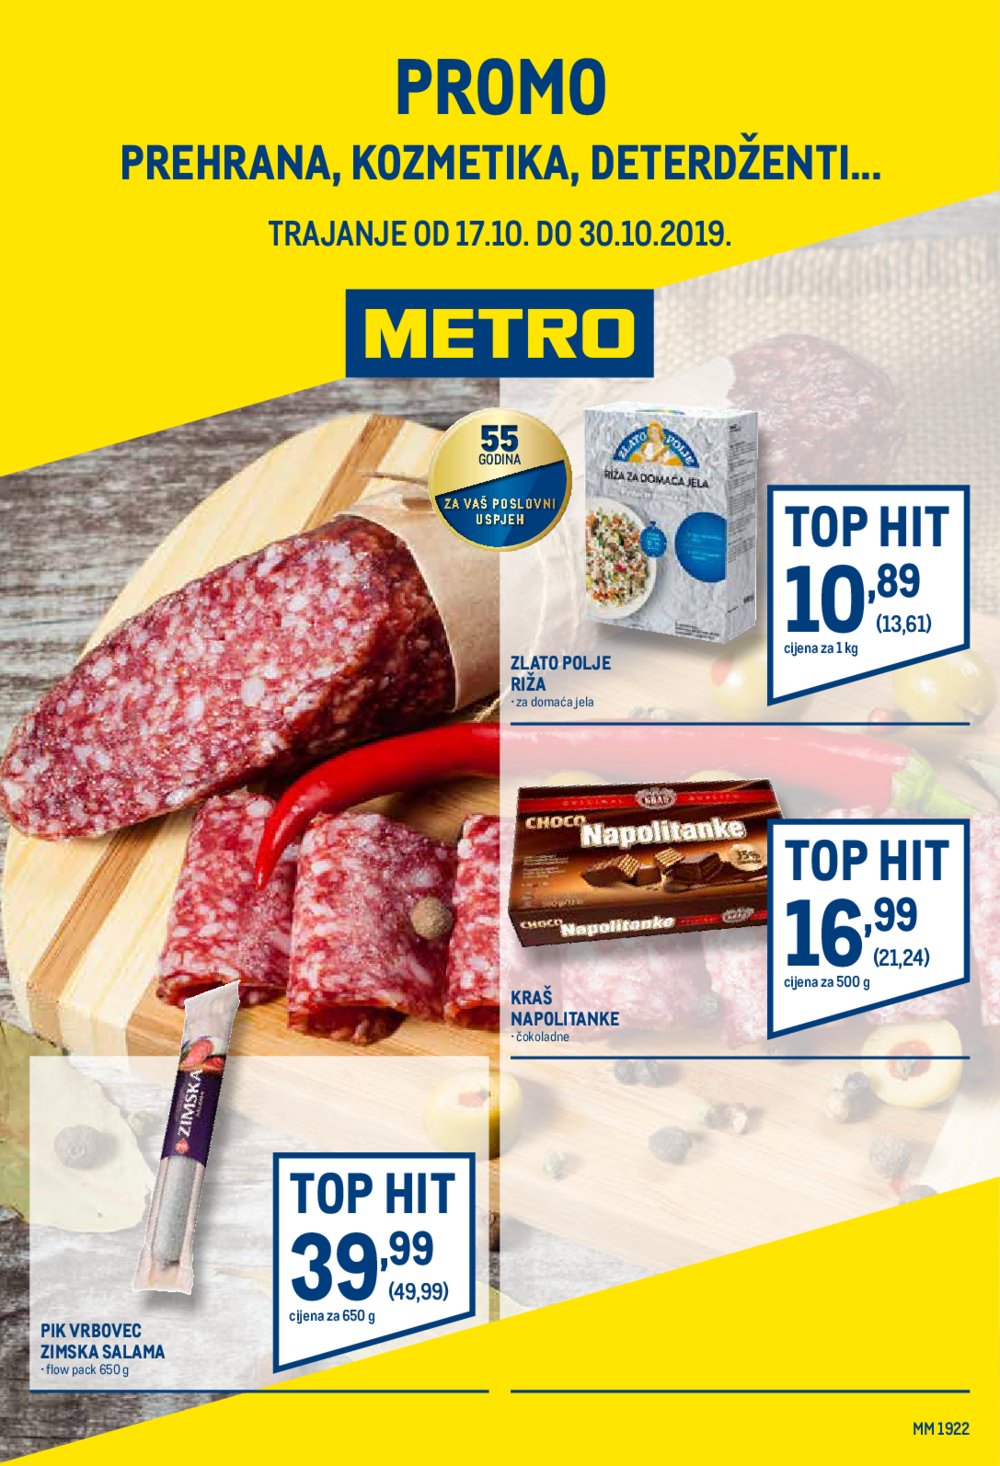 Metro katalog Prehrana 17.10. - 30.10.2019.